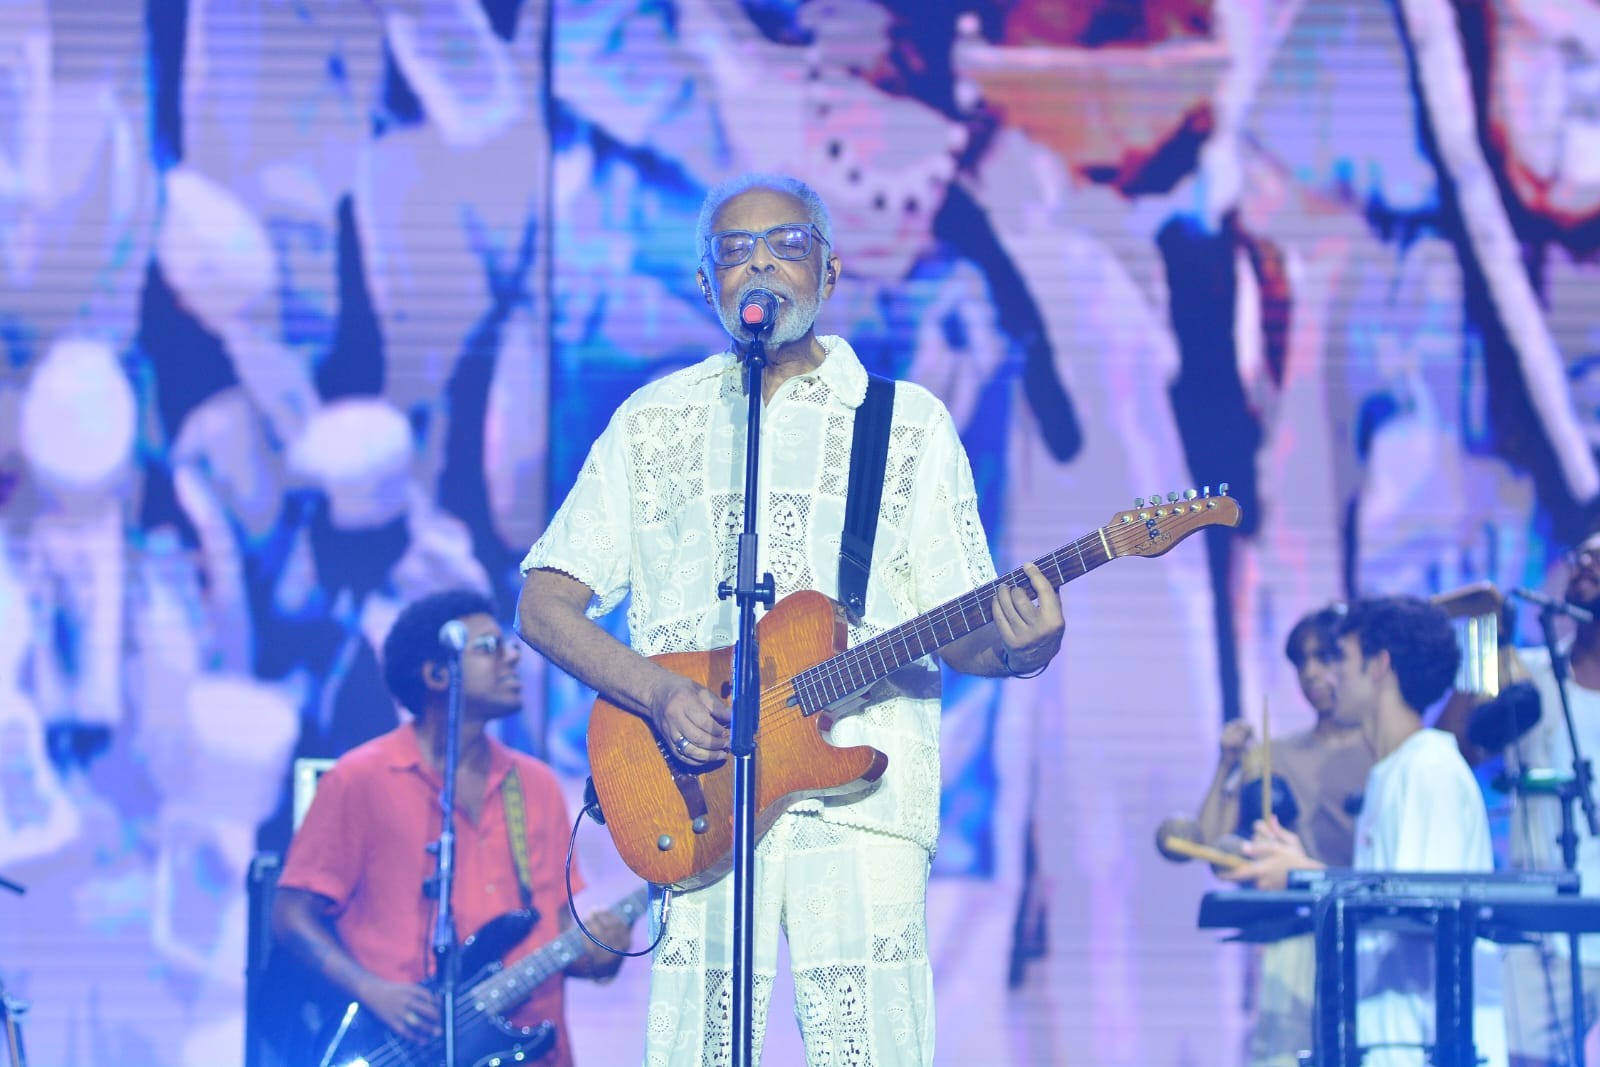 Com Preta de volta aos palcos, Gilberto Gil se apresenta com a família no Festival Virada Salvador